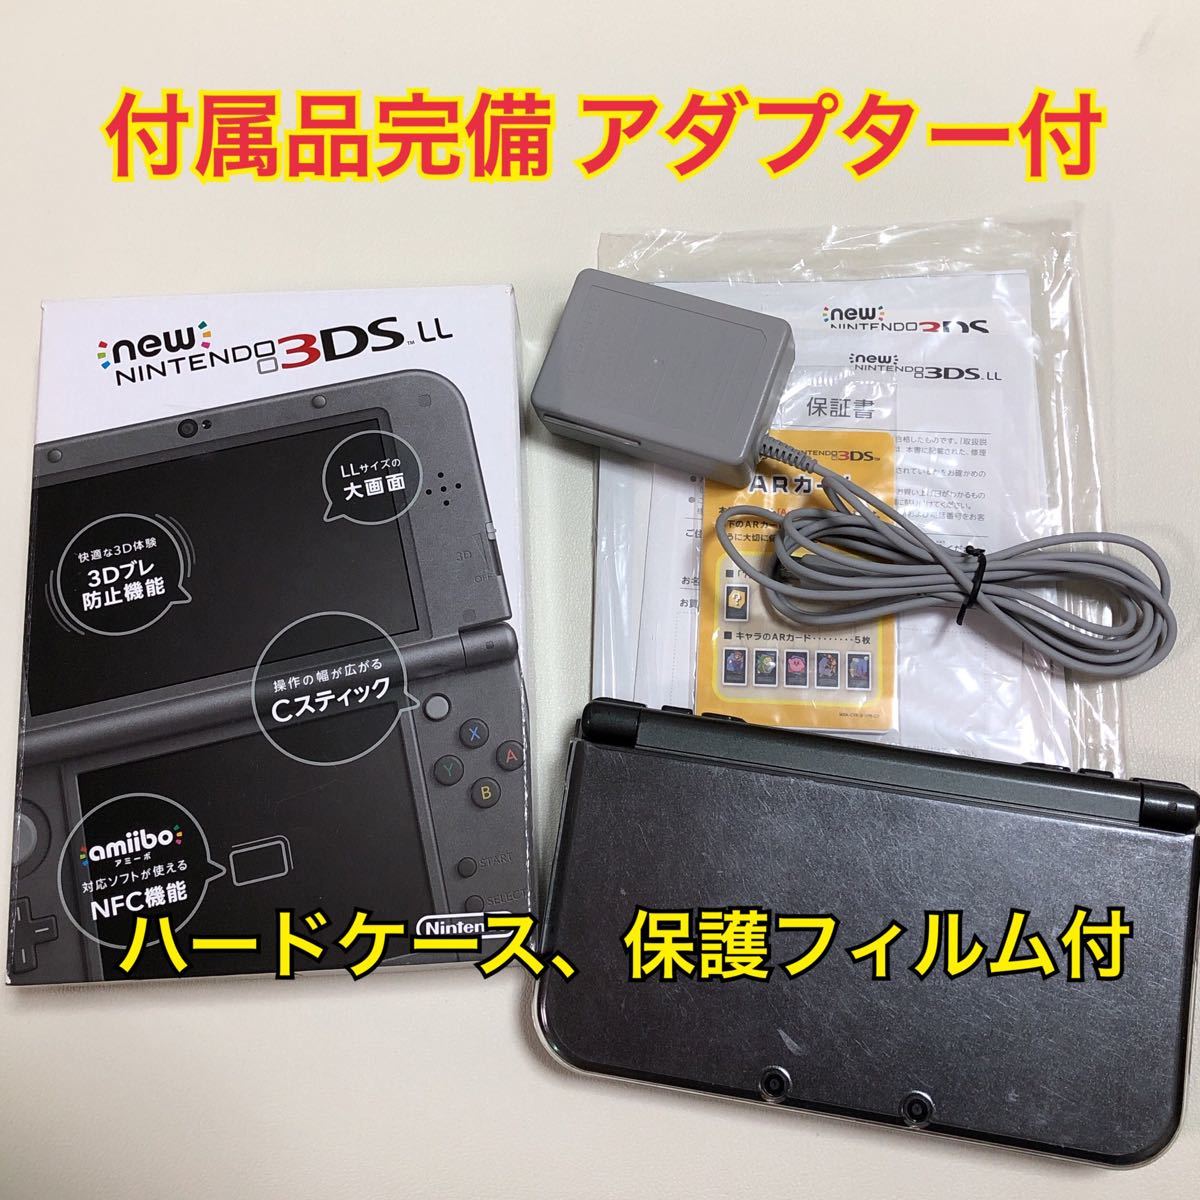 New ニンテンドー3DS LL 付属品完備  ACアダプター 任天堂3DS RED-001メタリックブラック 黒 ハードケース